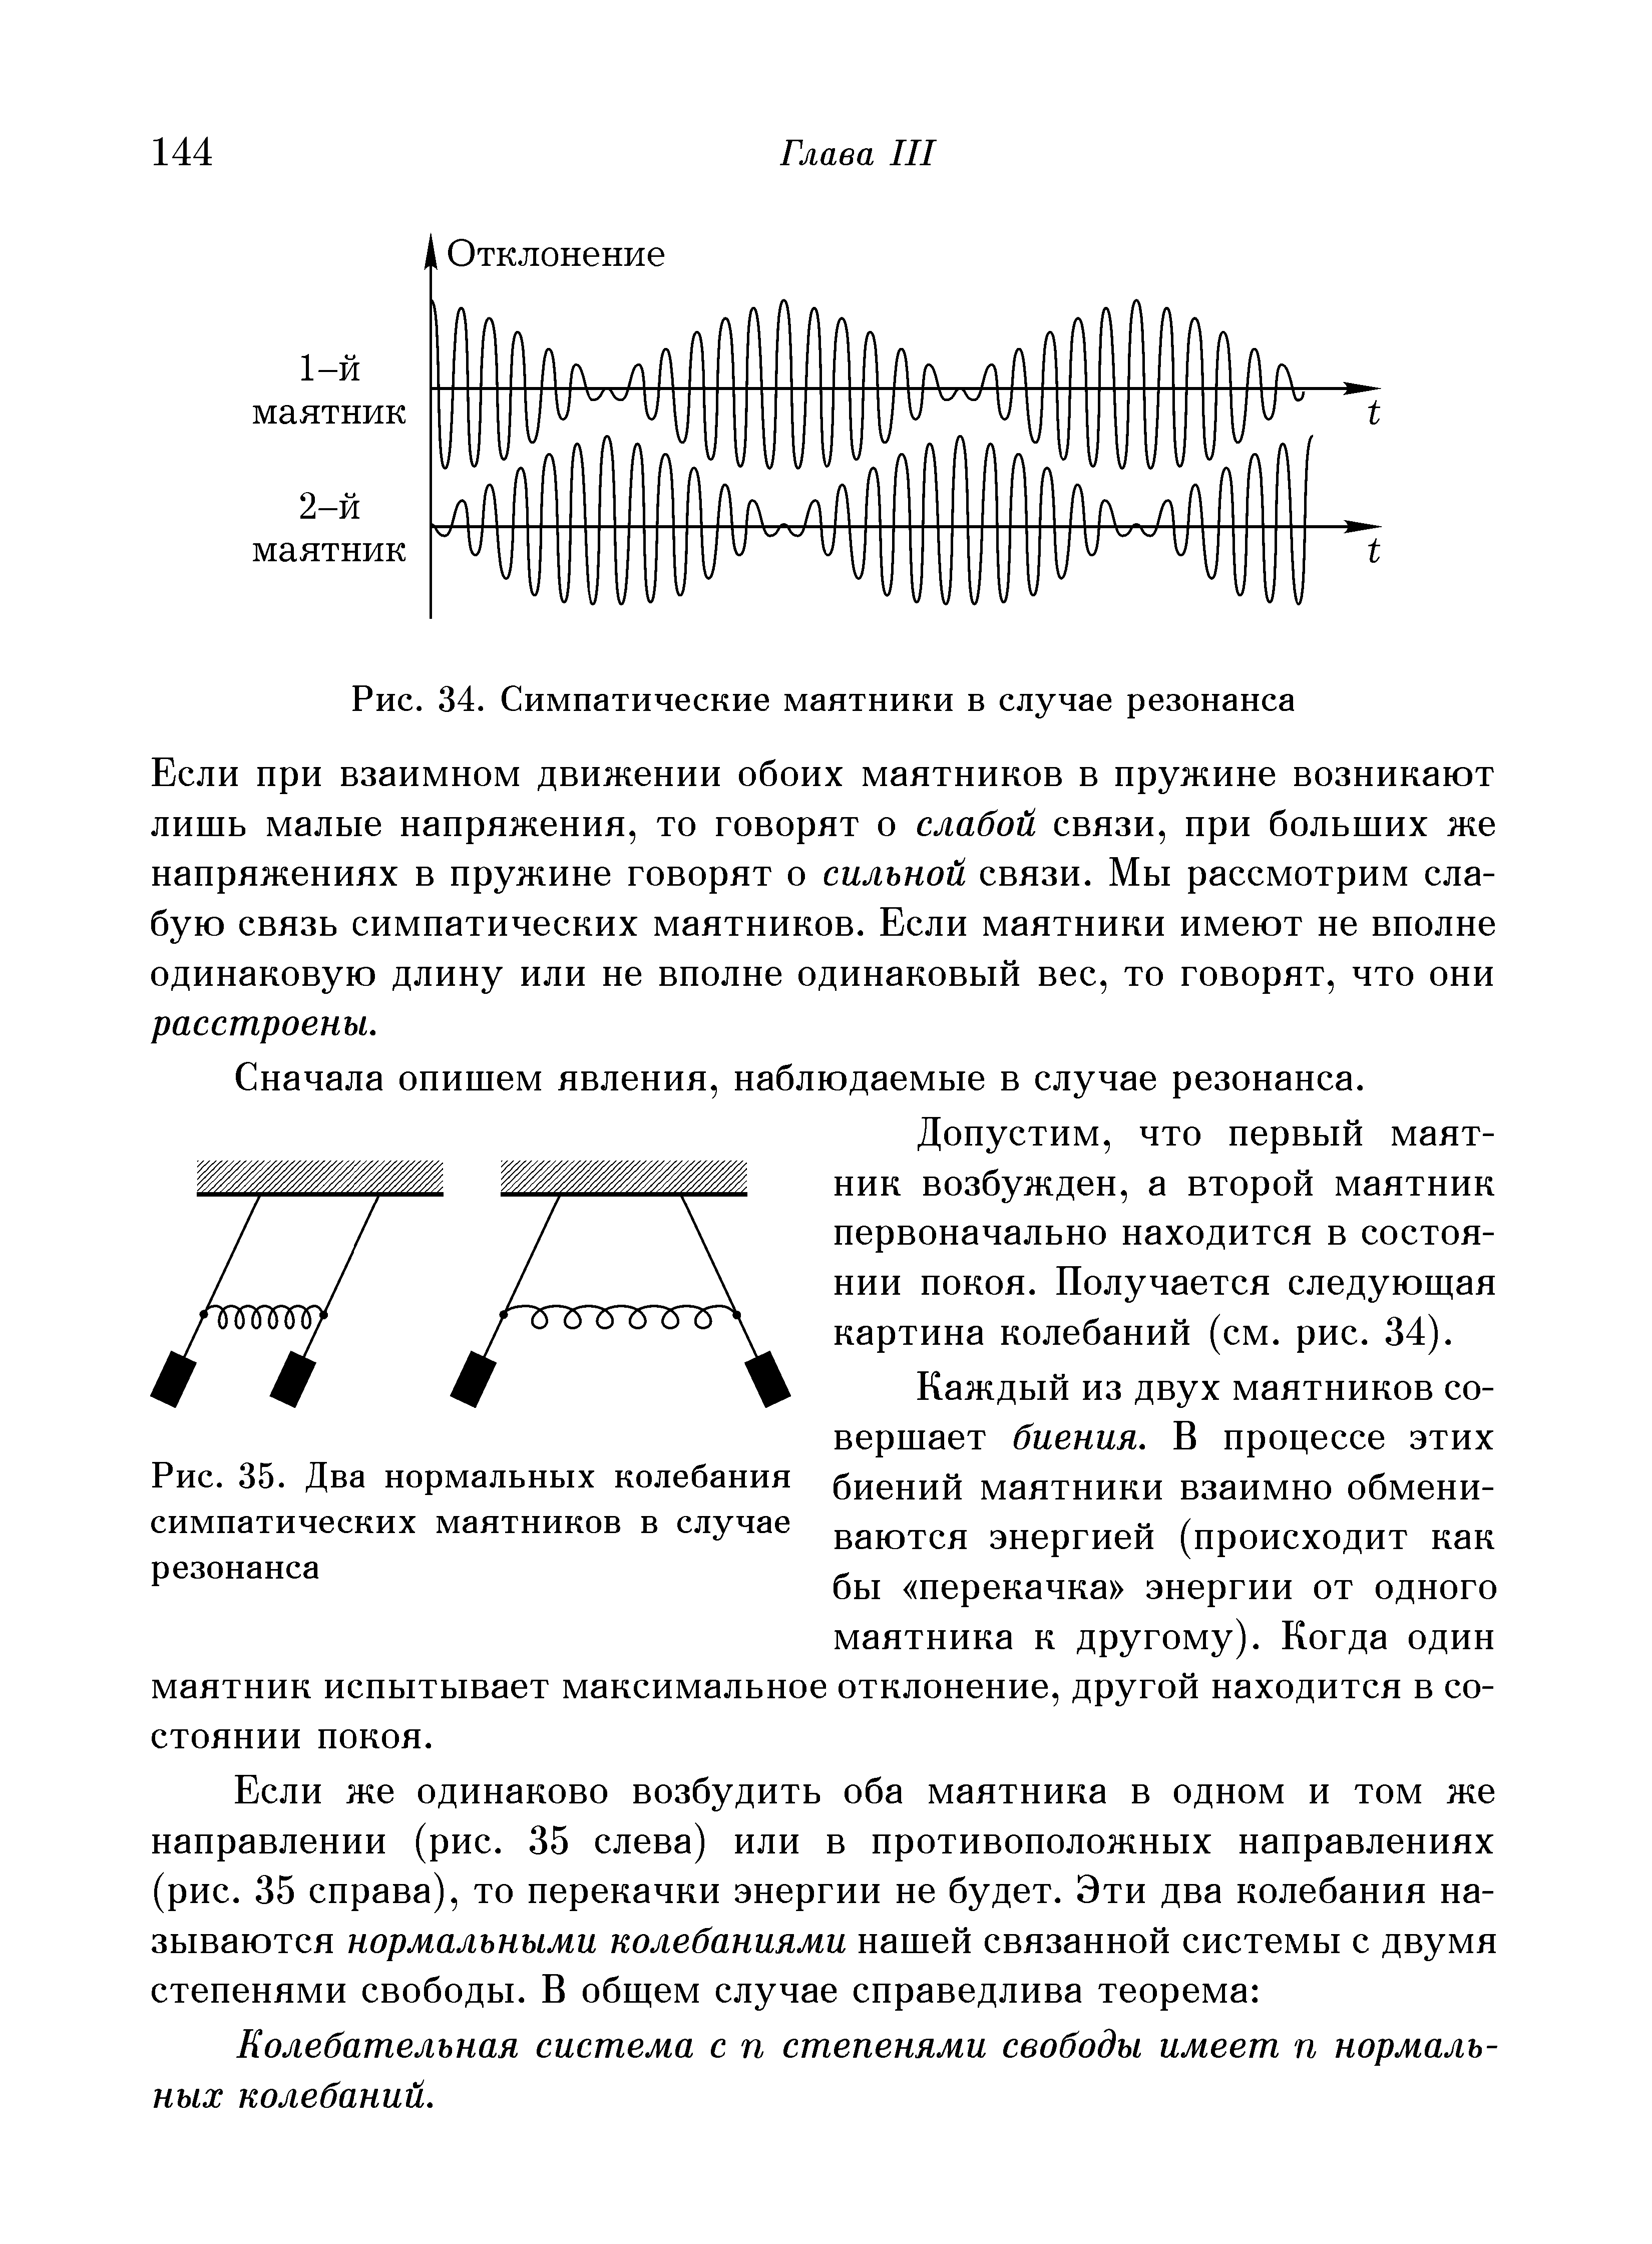 Рис. 35. Два <a href="/info/15491">нормальных колебания</a> симпатических маятников в случае резонанса
